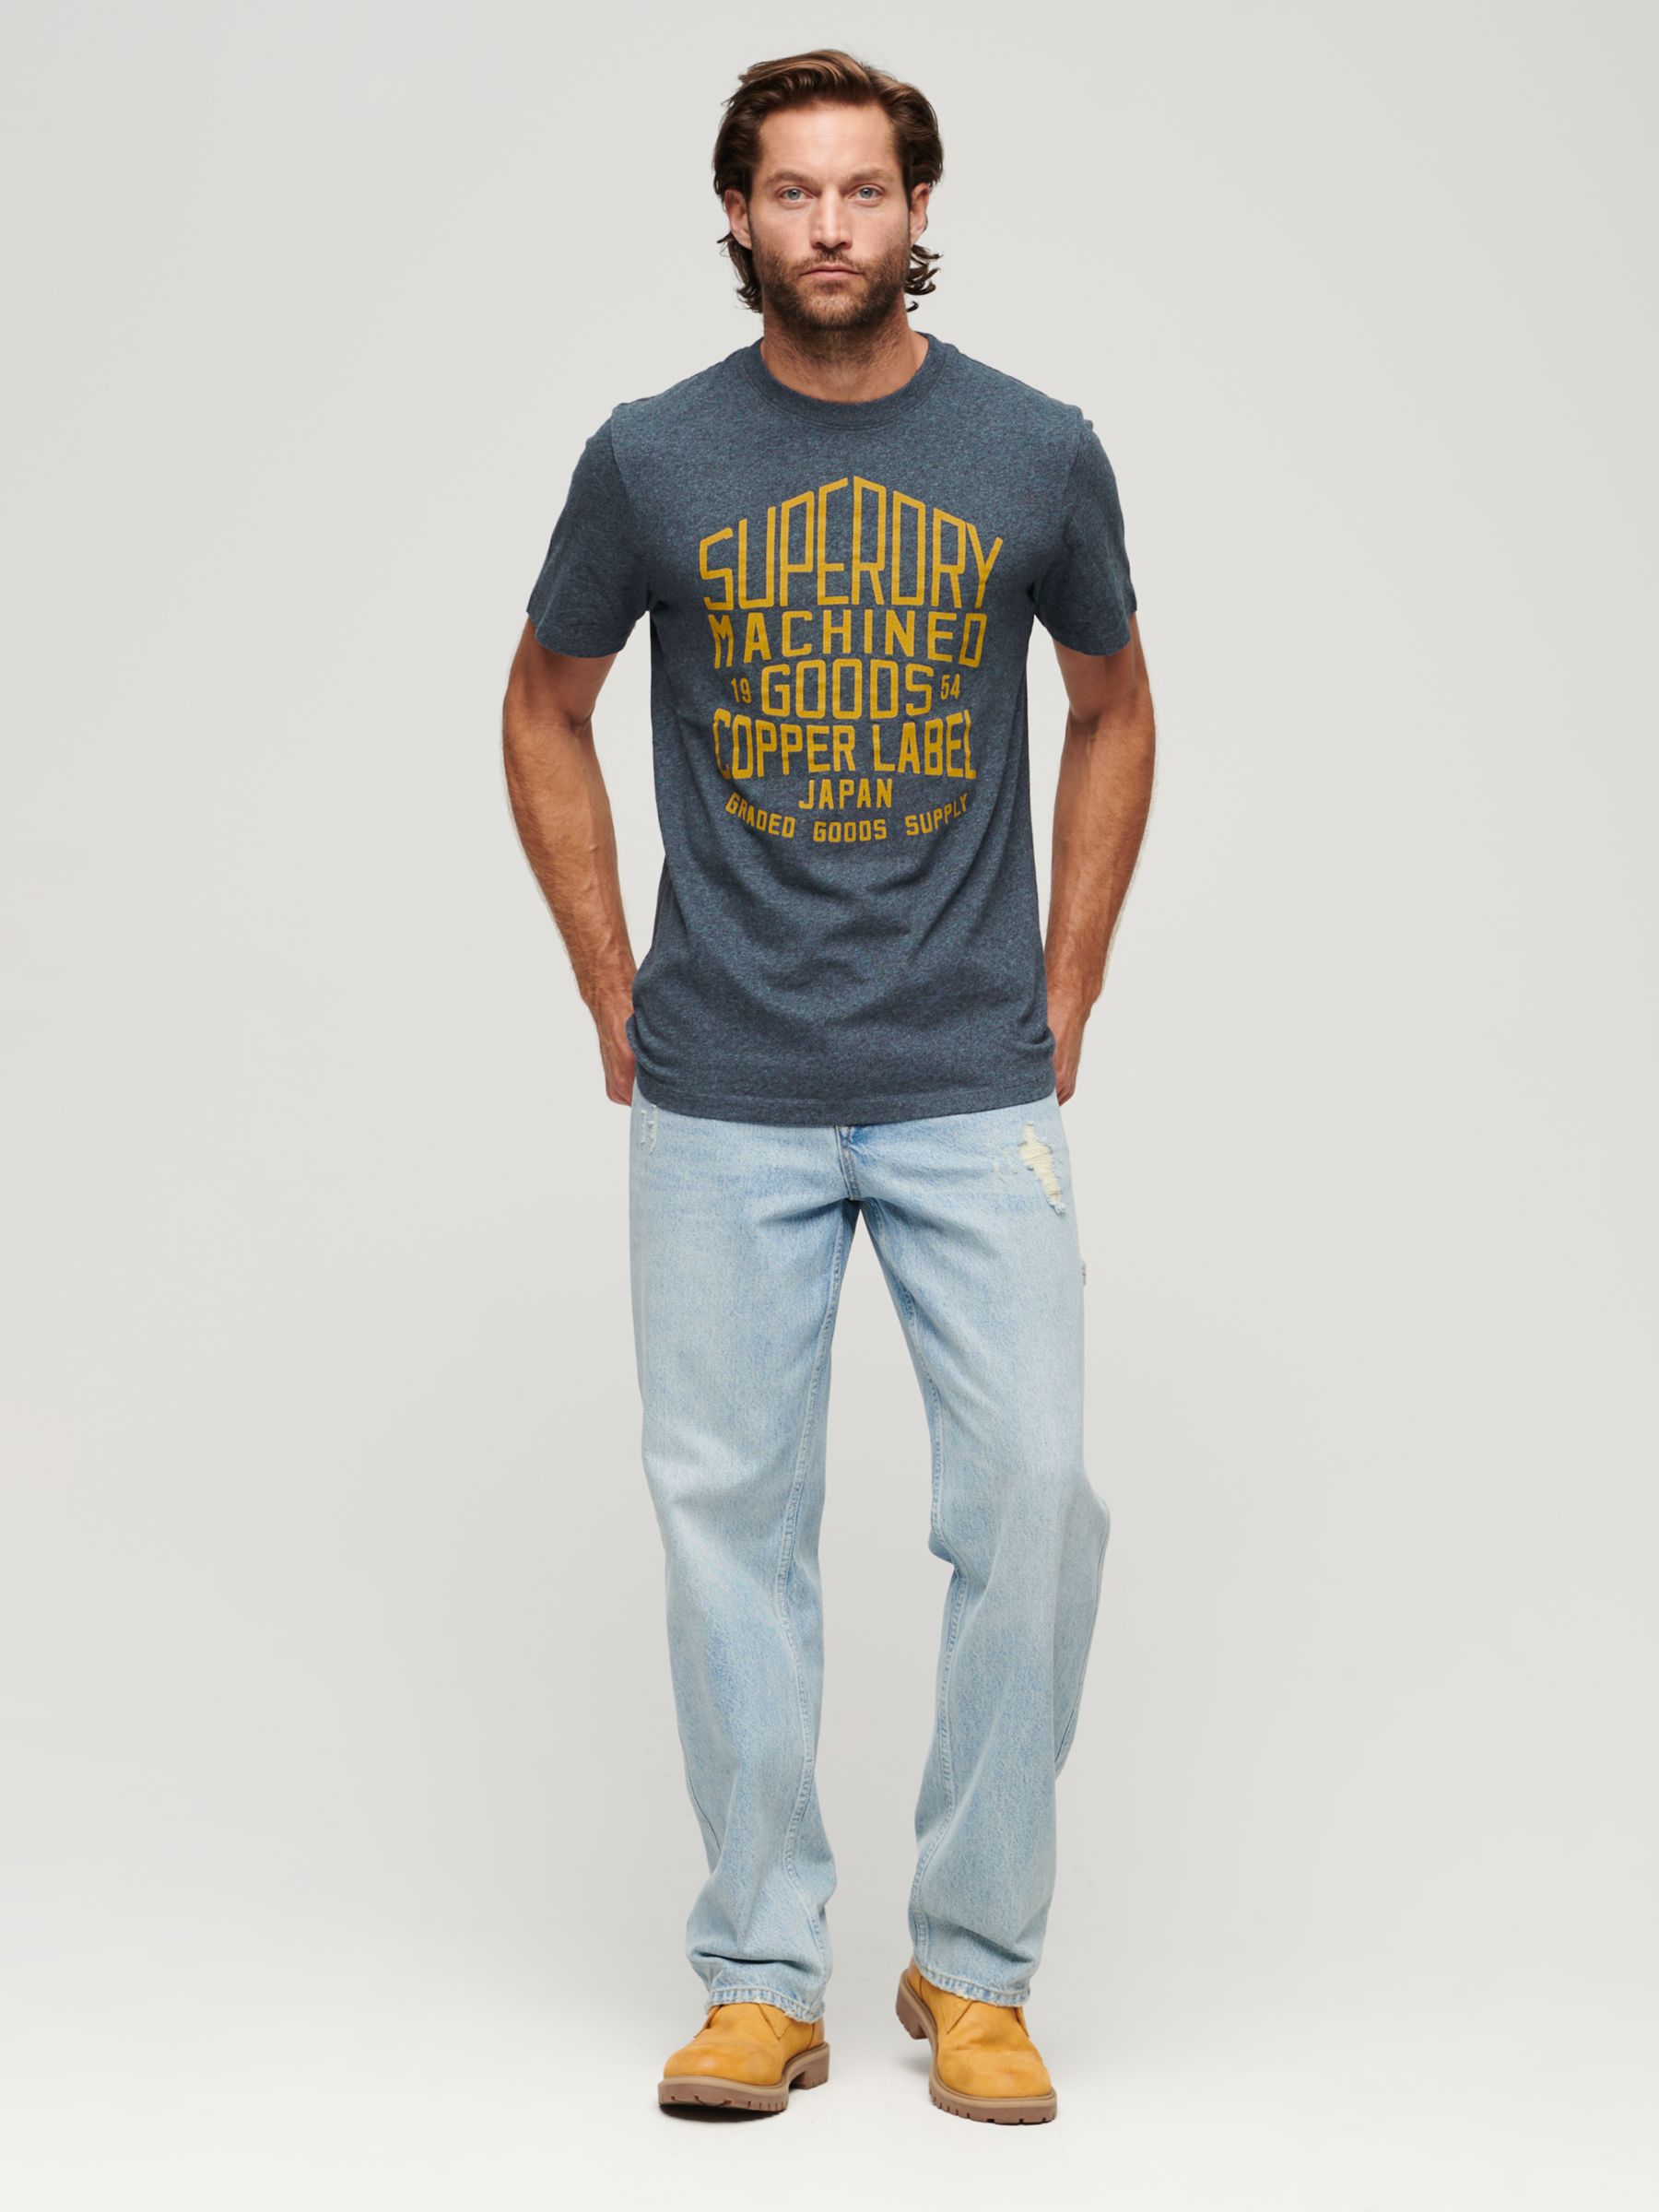 Superdry Copper Label Workwear T-Shirt, Airborne Navy, XXXL